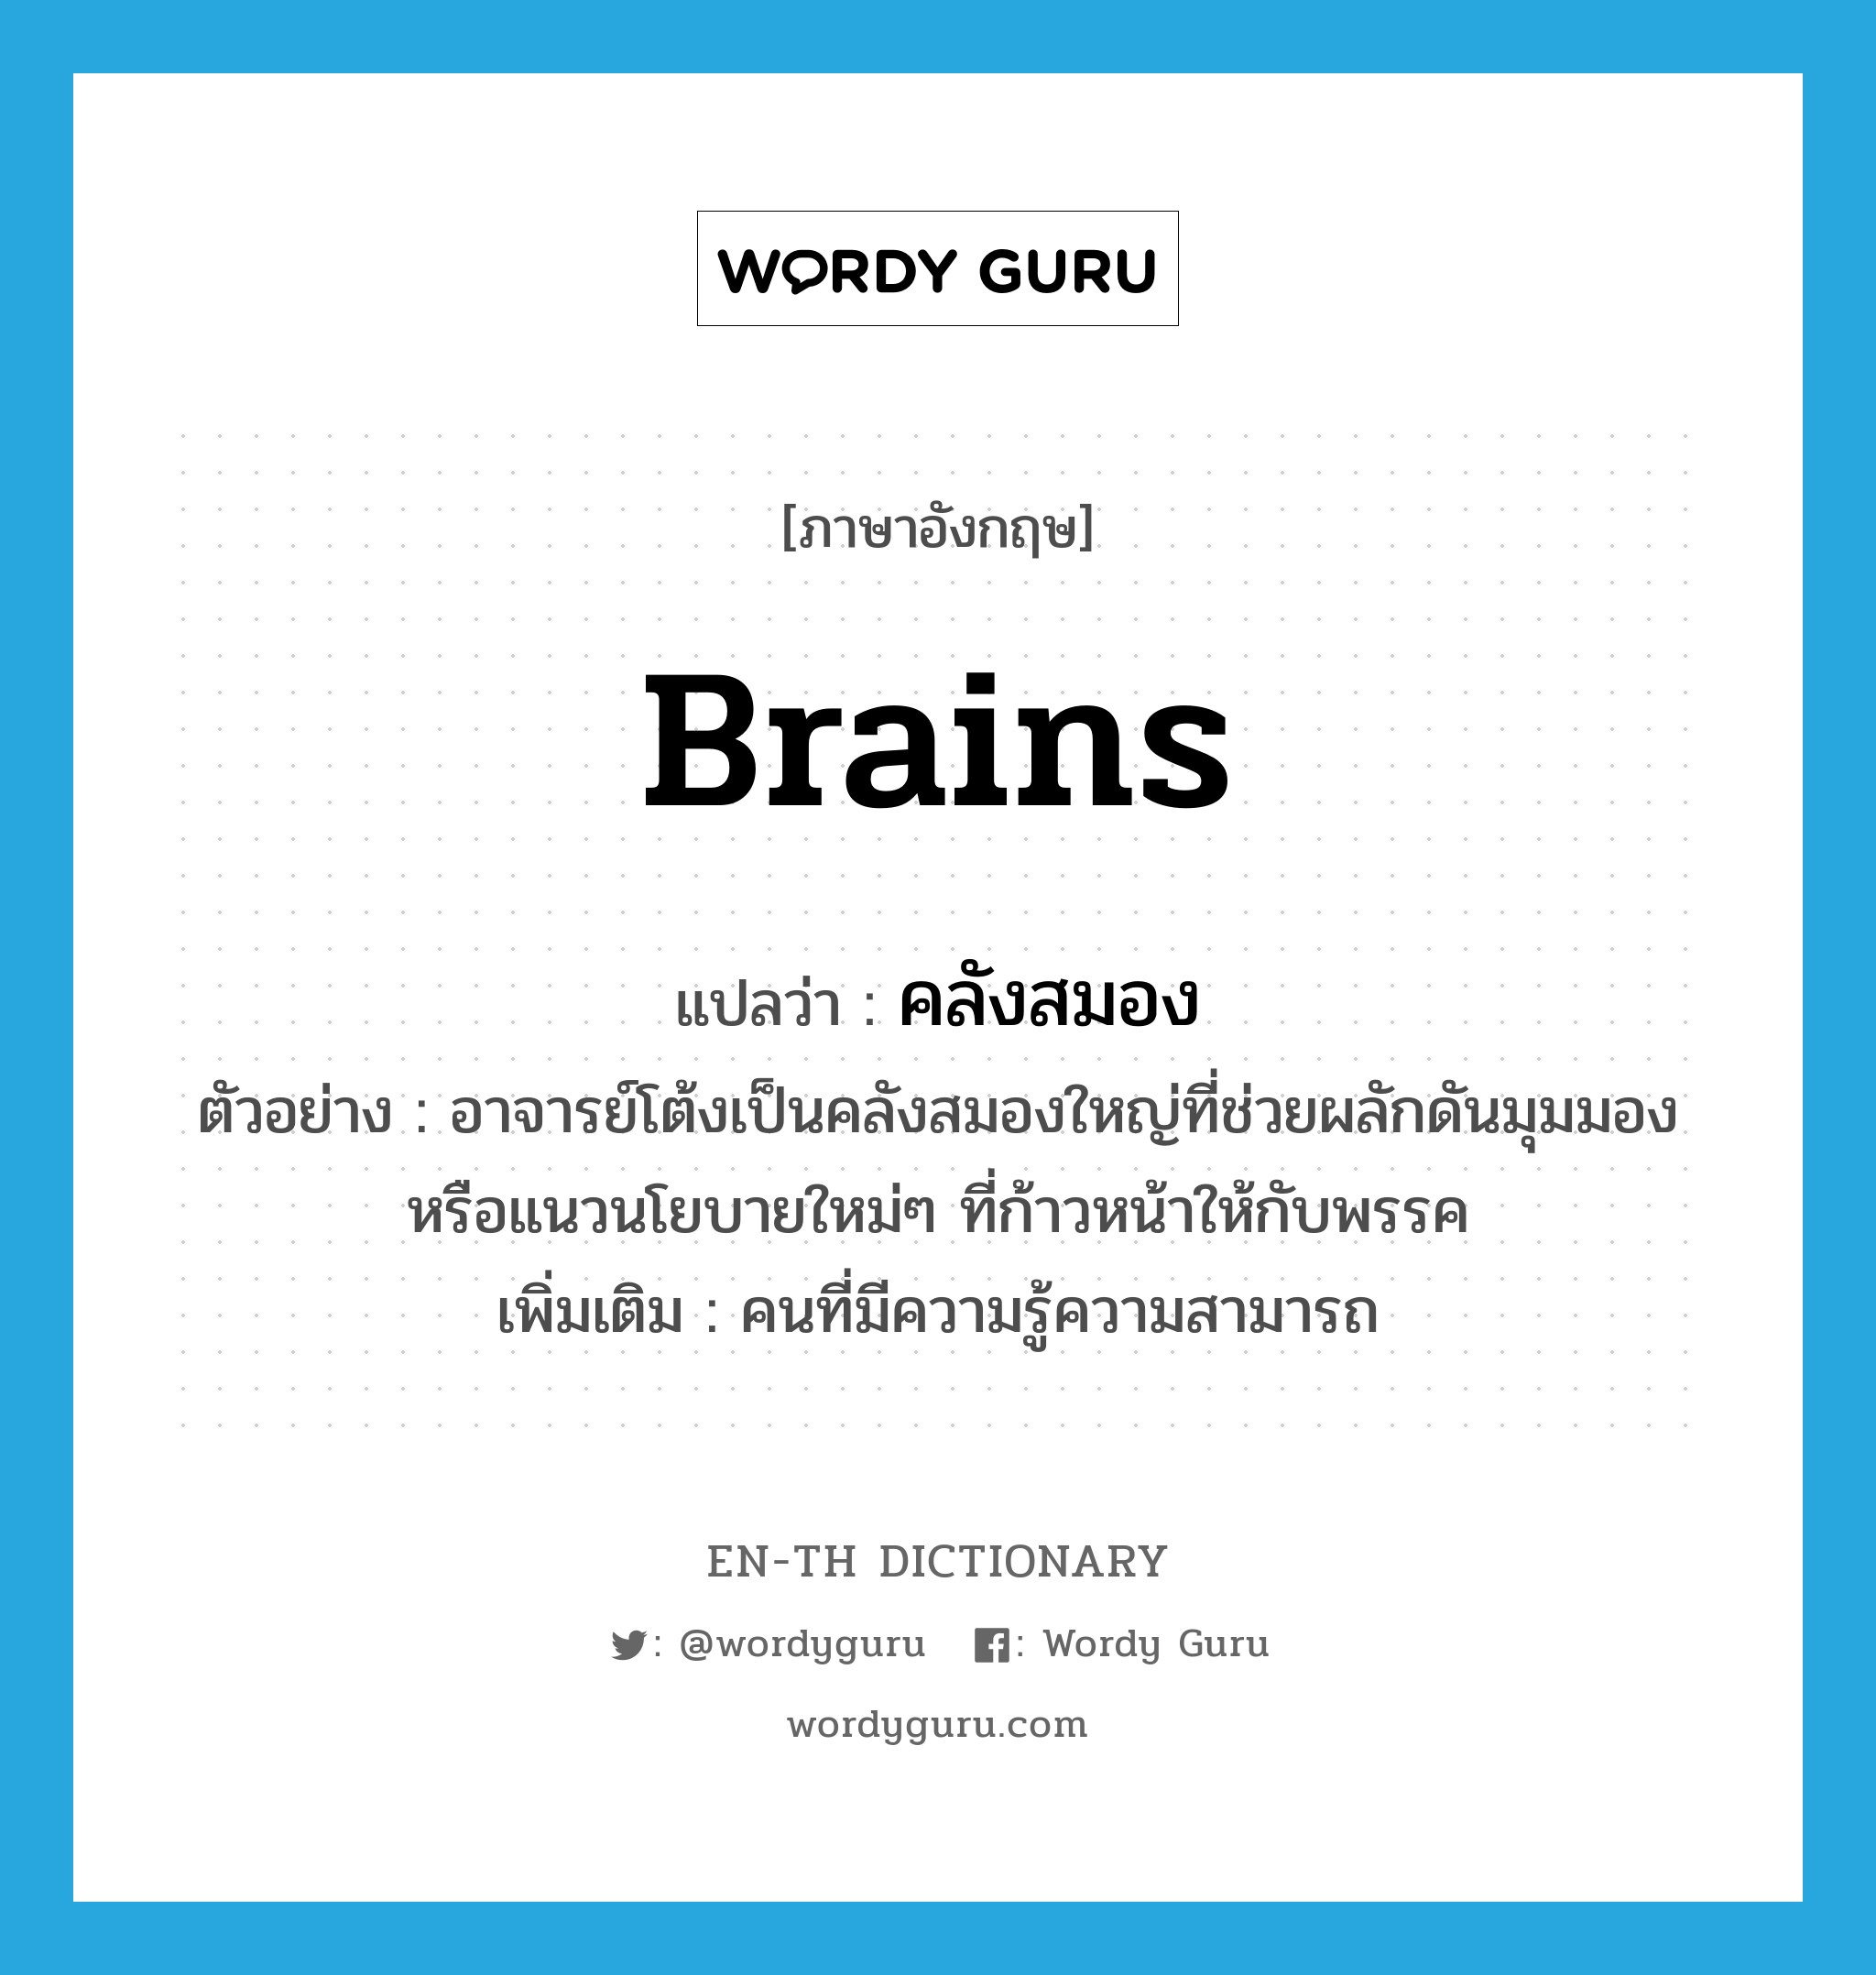 brains แปลว่า?, คำศัพท์ภาษาอังกฤษ brains แปลว่า คลังสมอง ประเภท N ตัวอย่าง อาจารย์โต้งเป็นคลังสมองใหญ่ที่ช่วยผลักดันมุมมอง หรือแนวนโยบายใหม่ๆ ที่ก้าวหน้าให้กับพรรค เพิ่มเติม คนที่มีความรู้ความสามารถ หมวด N